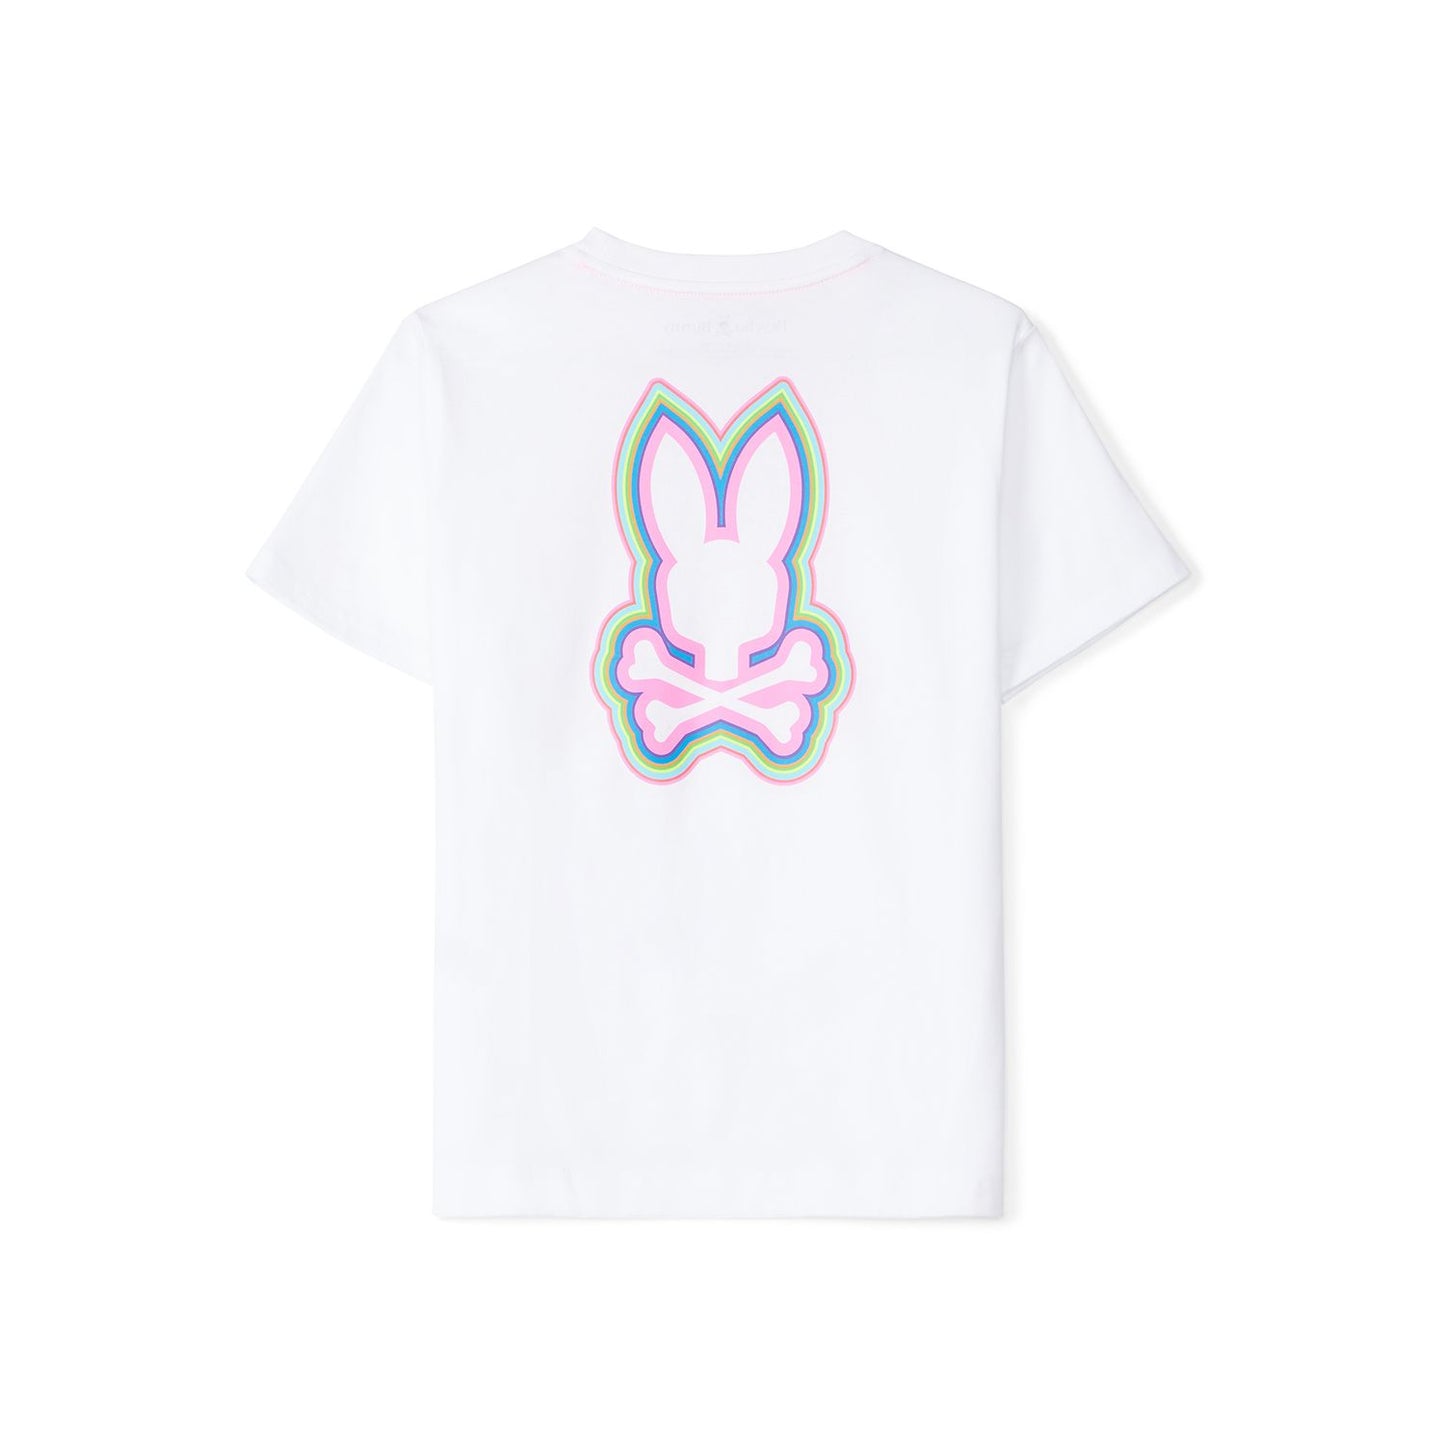 Psycho Bunny Kids Maybrook Back Graphic White T-Shirt_ B0U196B2TS-100